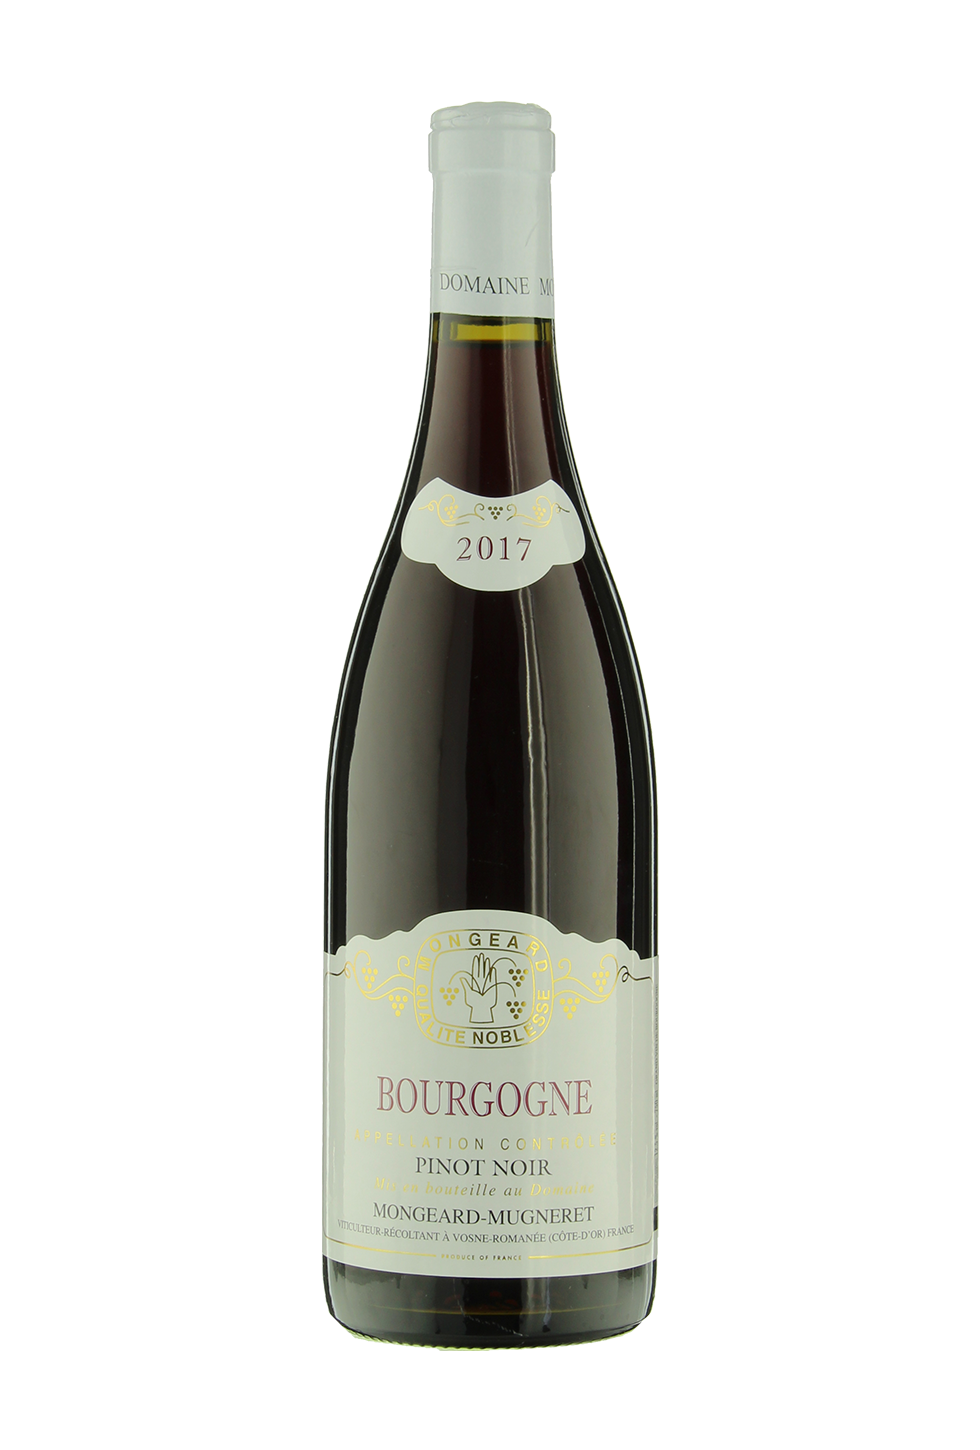 Купить Domaine Mongeard-Mugneret Bourgogne Pinot Noir в Москве